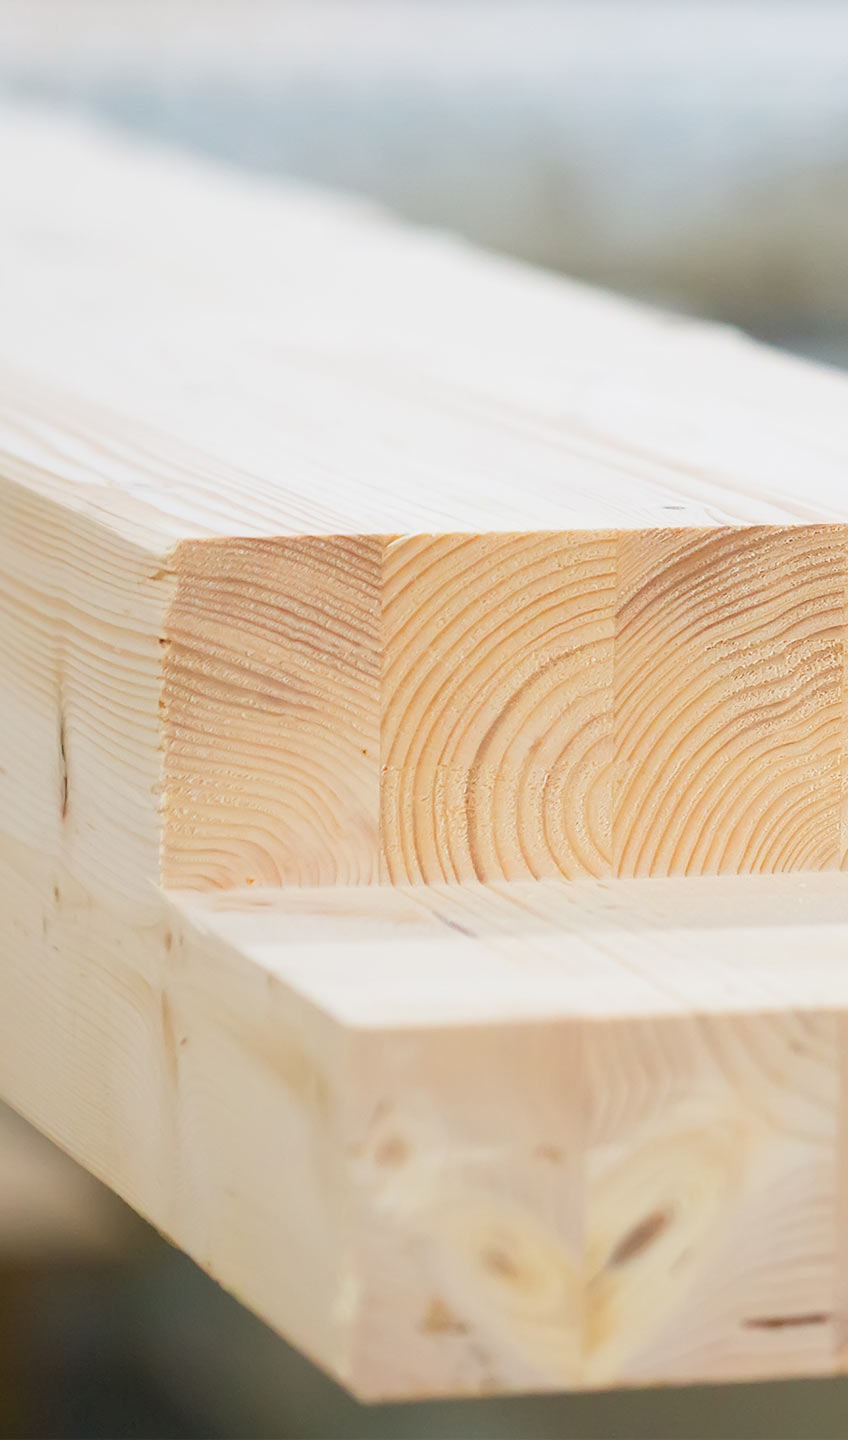 Sortiment Holzbau bei Max Schierer Baustoffe